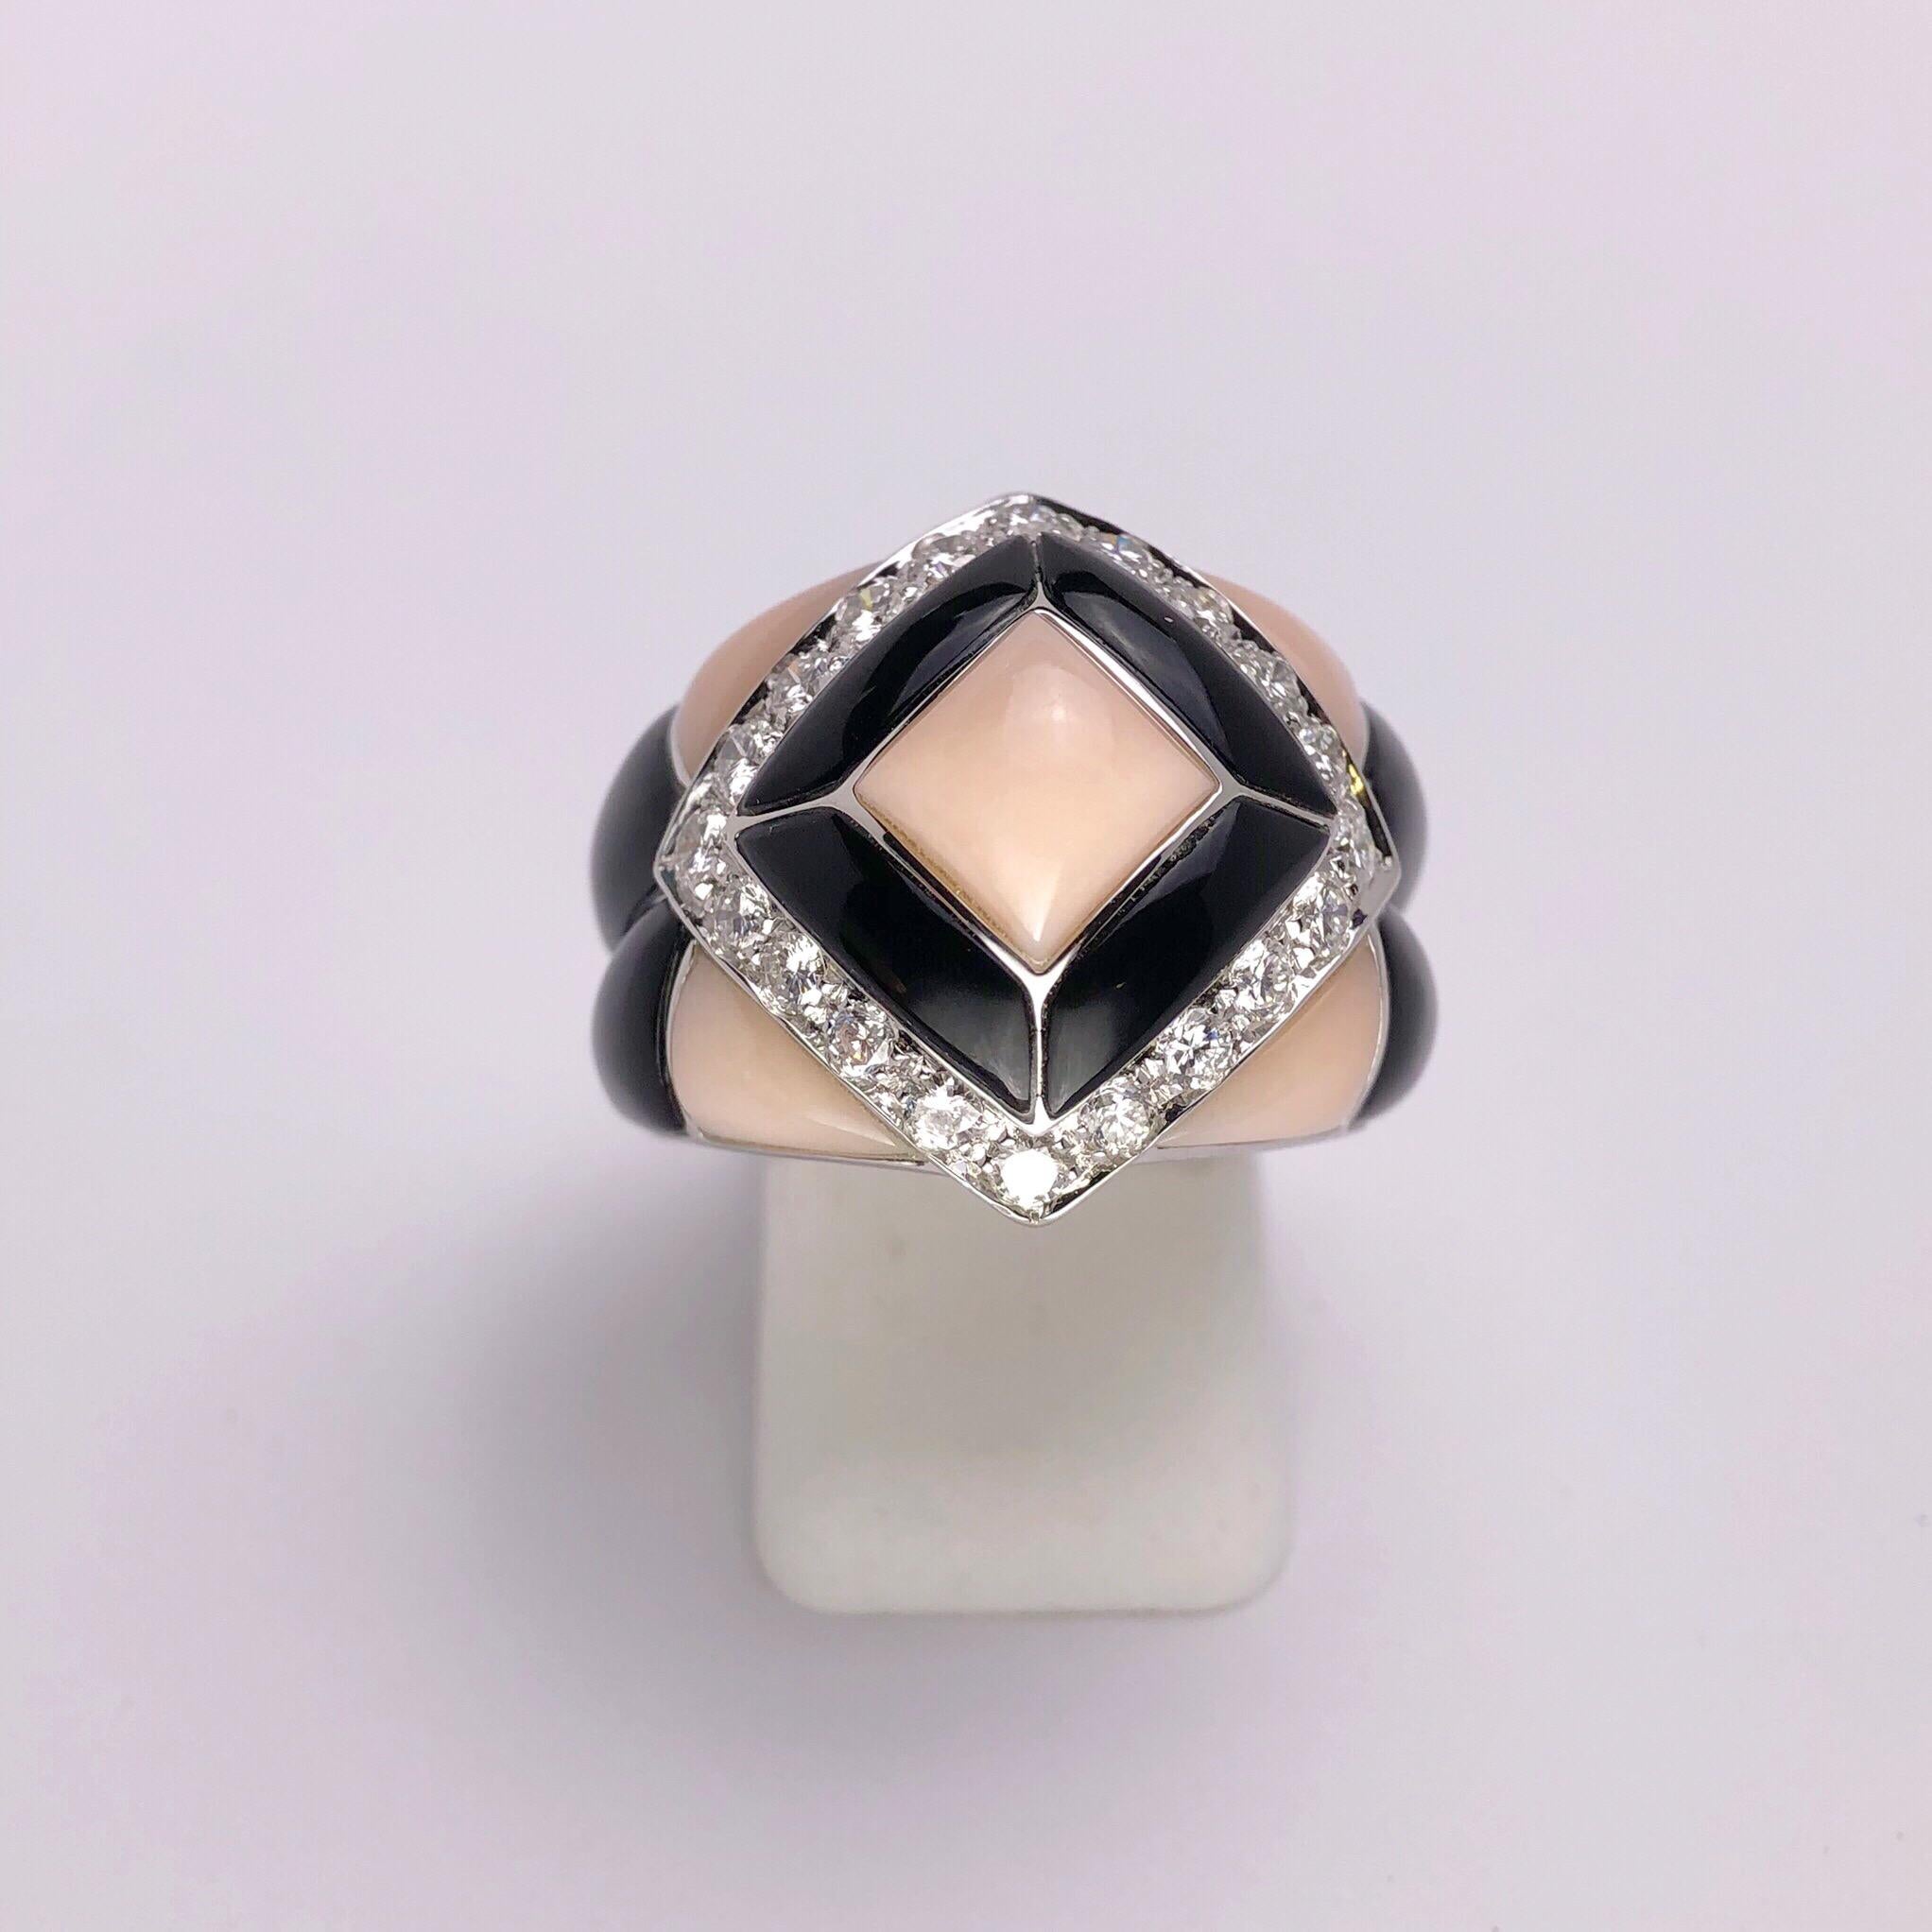 Dieser atemberaubende Ring aus 18 Kt. Weißgold wurde vom renommierten italienischen Juwelier Oro Trend entworfen. Es hat einen starken Art-Déco-Einfluss. Handgeschnitzte geometrische Teile aus rosa Koralle und schwarzem Onyx  Die Mitte des Rings